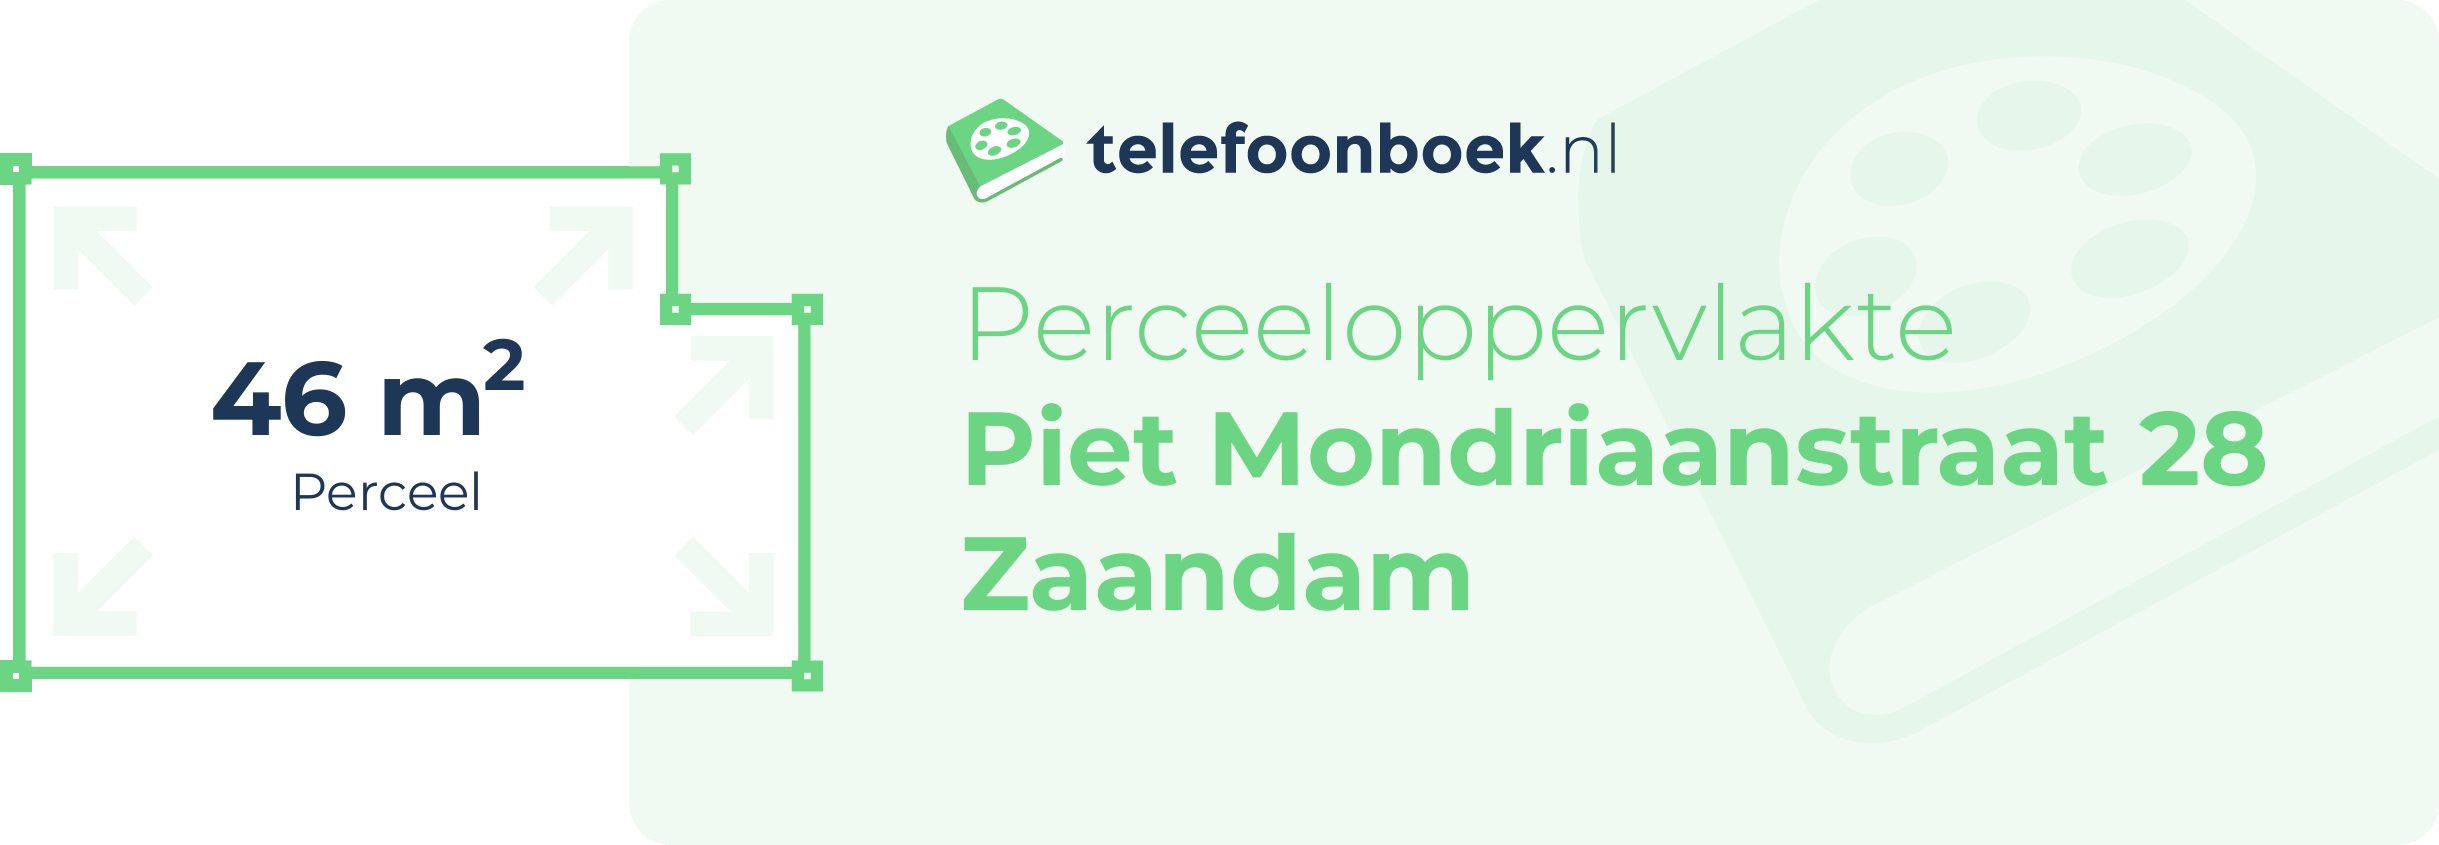 Perceeloppervlakte Piet Mondriaanstraat 28 Zaandam